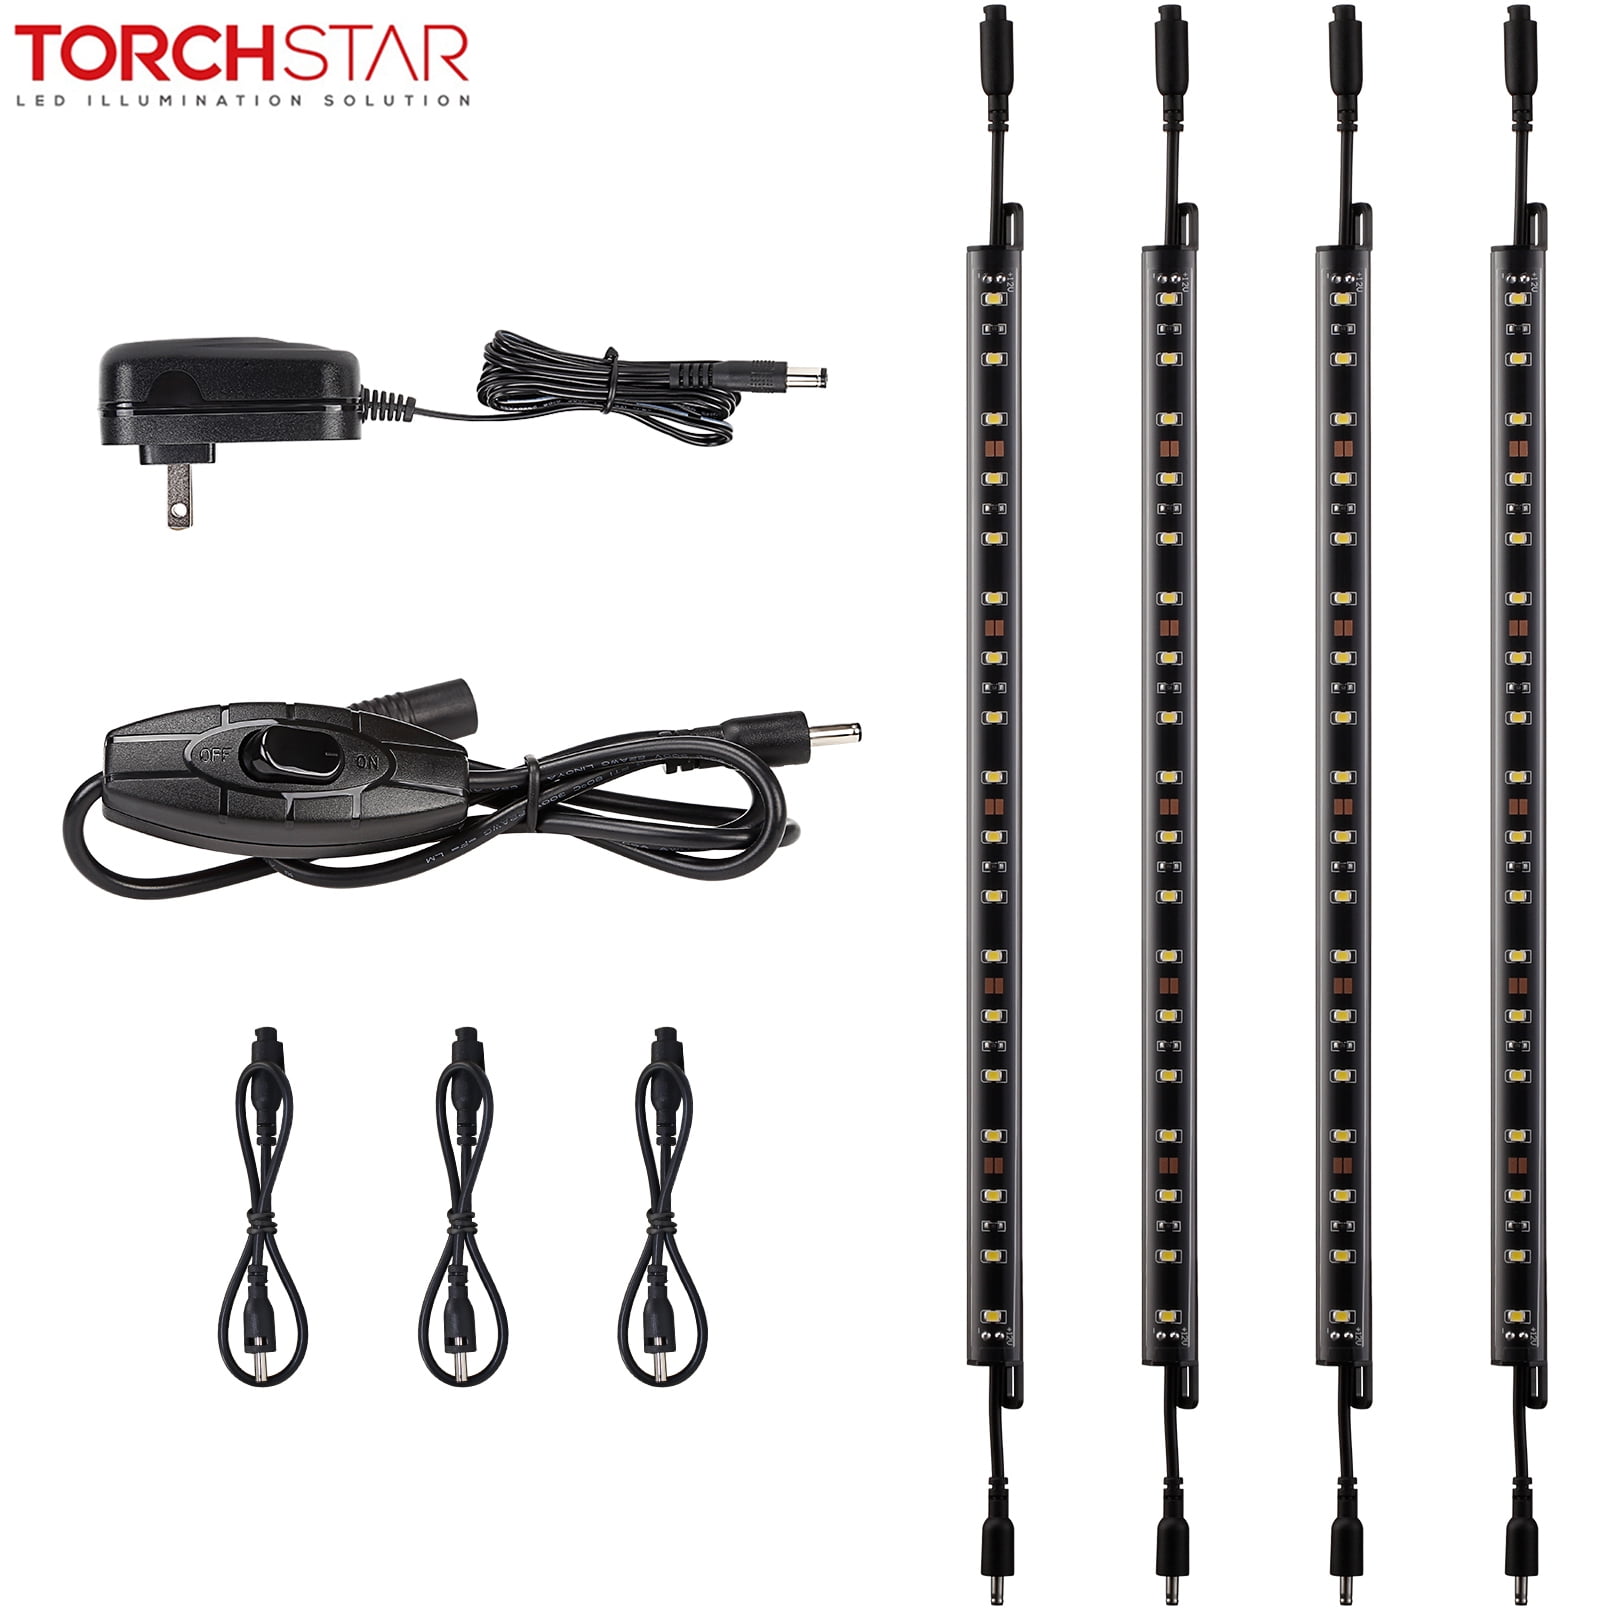 Torchstar LED Safe Lighting Kit for Under Cabinet, Gun Safe, Shelf, Showcas, (4) 12 inch Linkable Light Bars + Rocker Switch + UL Adapter, 5000K